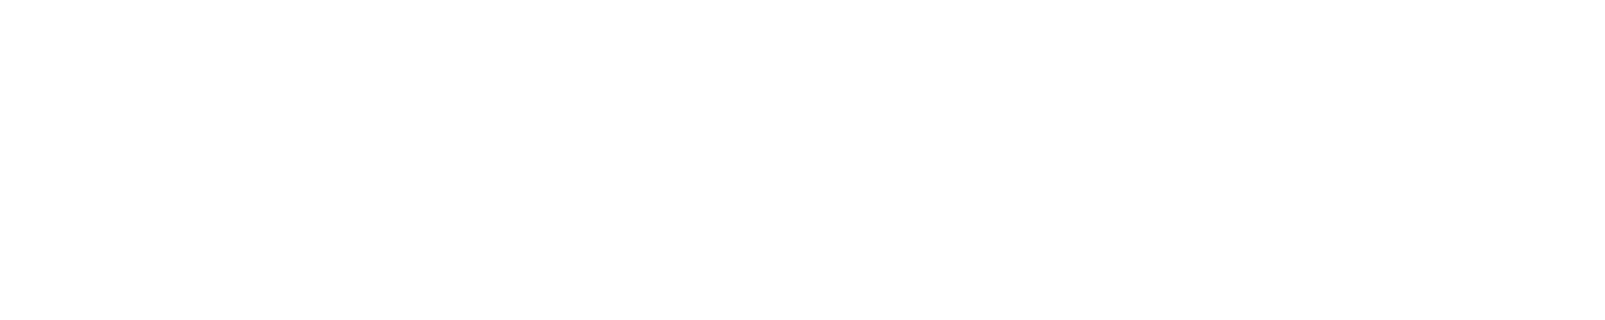 sergio-levantesi_logo_heavy